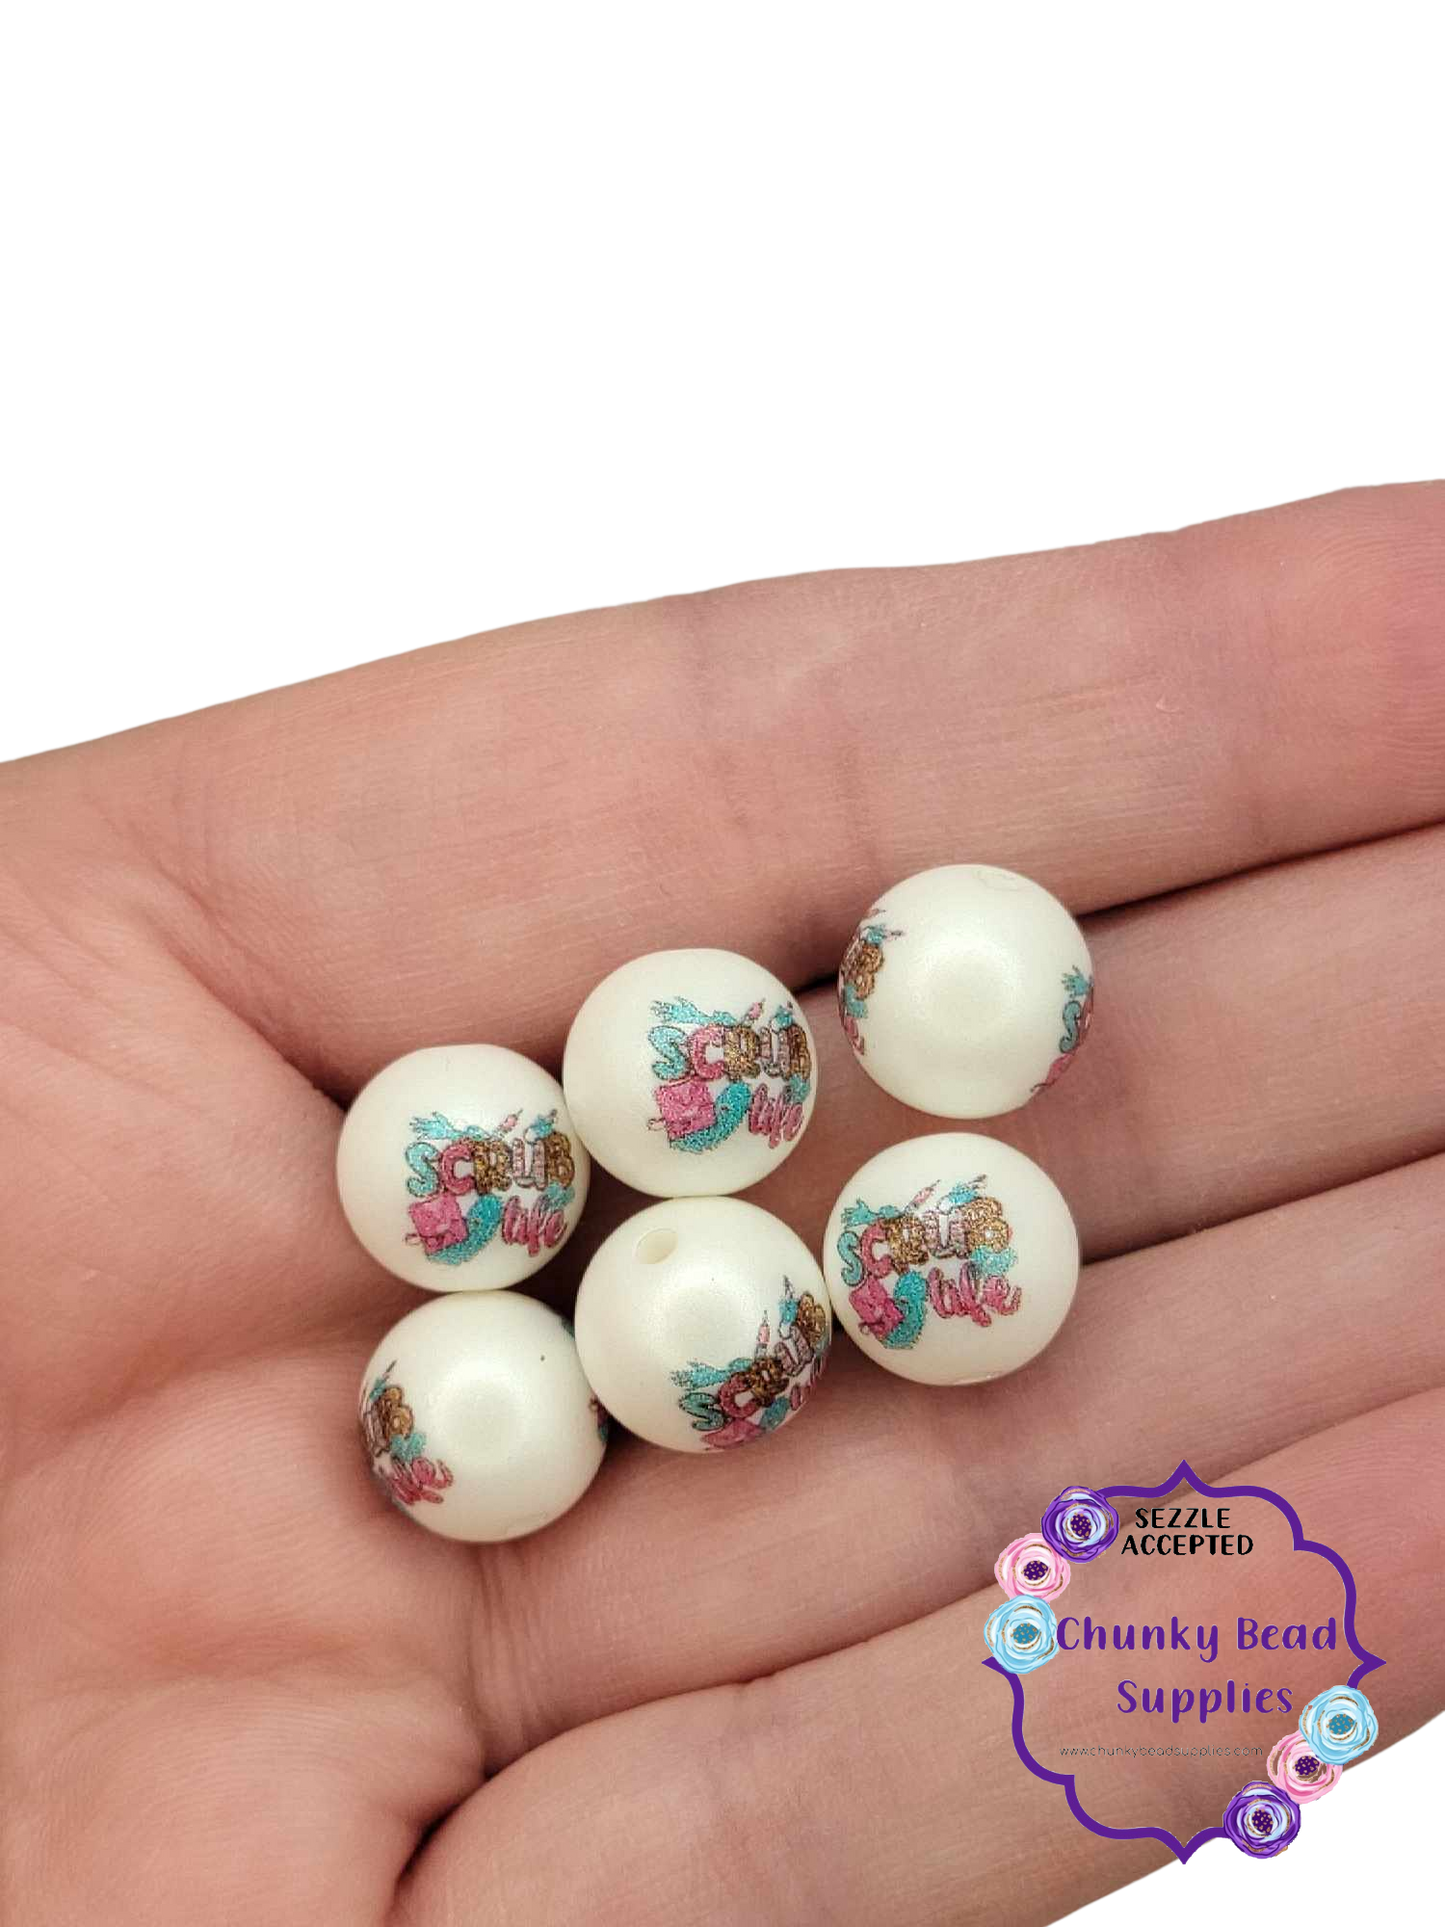 Perles acryliques personnalisées en gros caractères « Nurse Life » de 12 mm